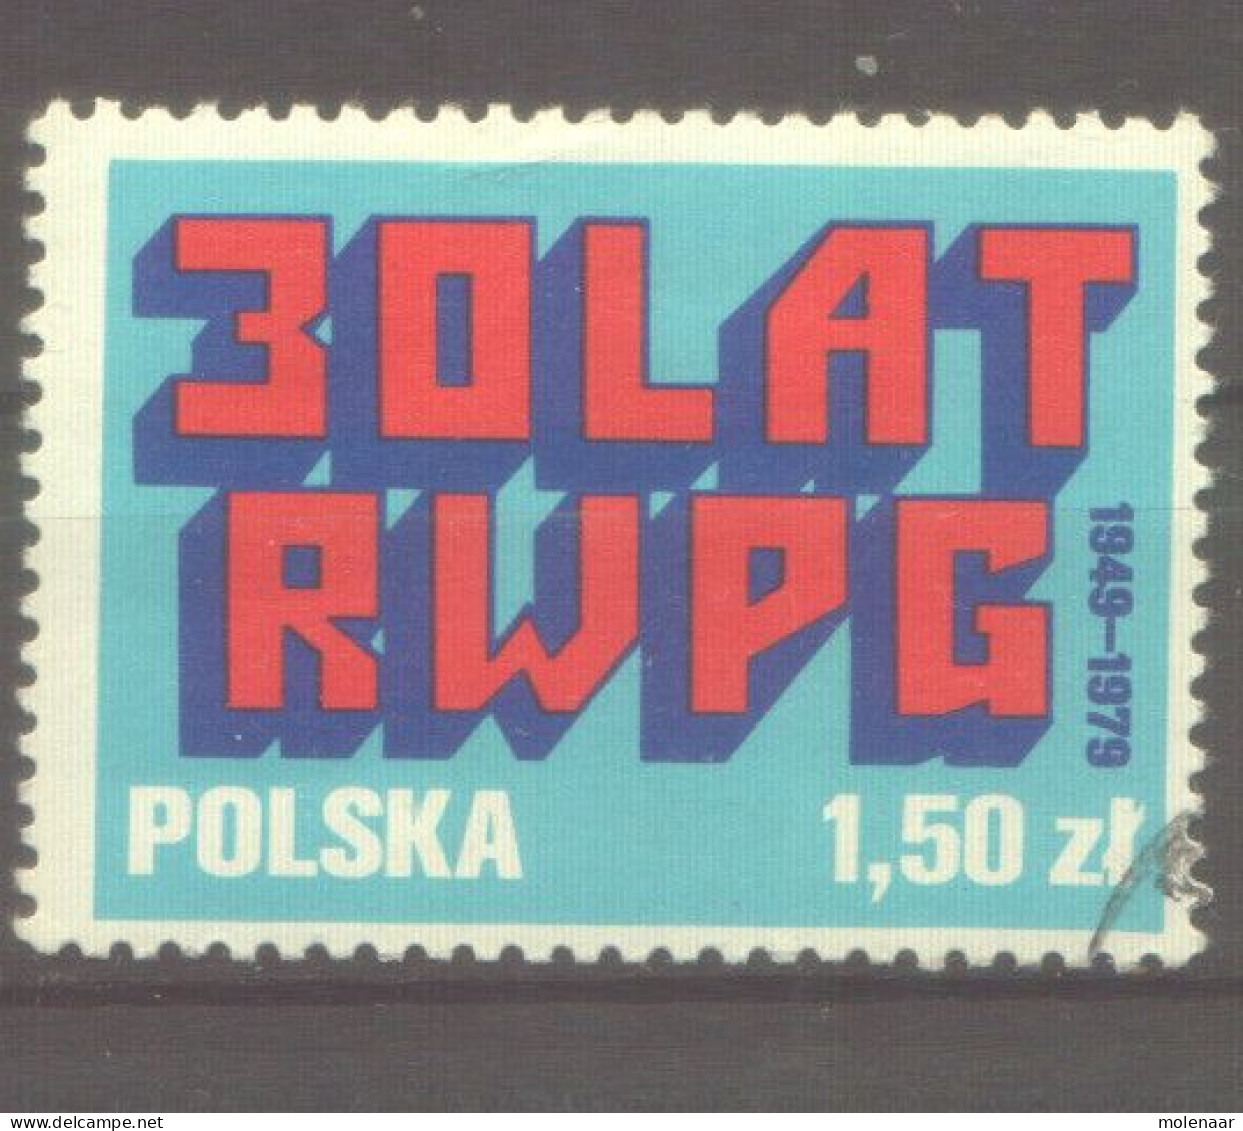 Postzegels > Europa > Polen > 1944-.... Republiek > 1971-80 > Gebruikt No. 2626  (1216612) - Usados